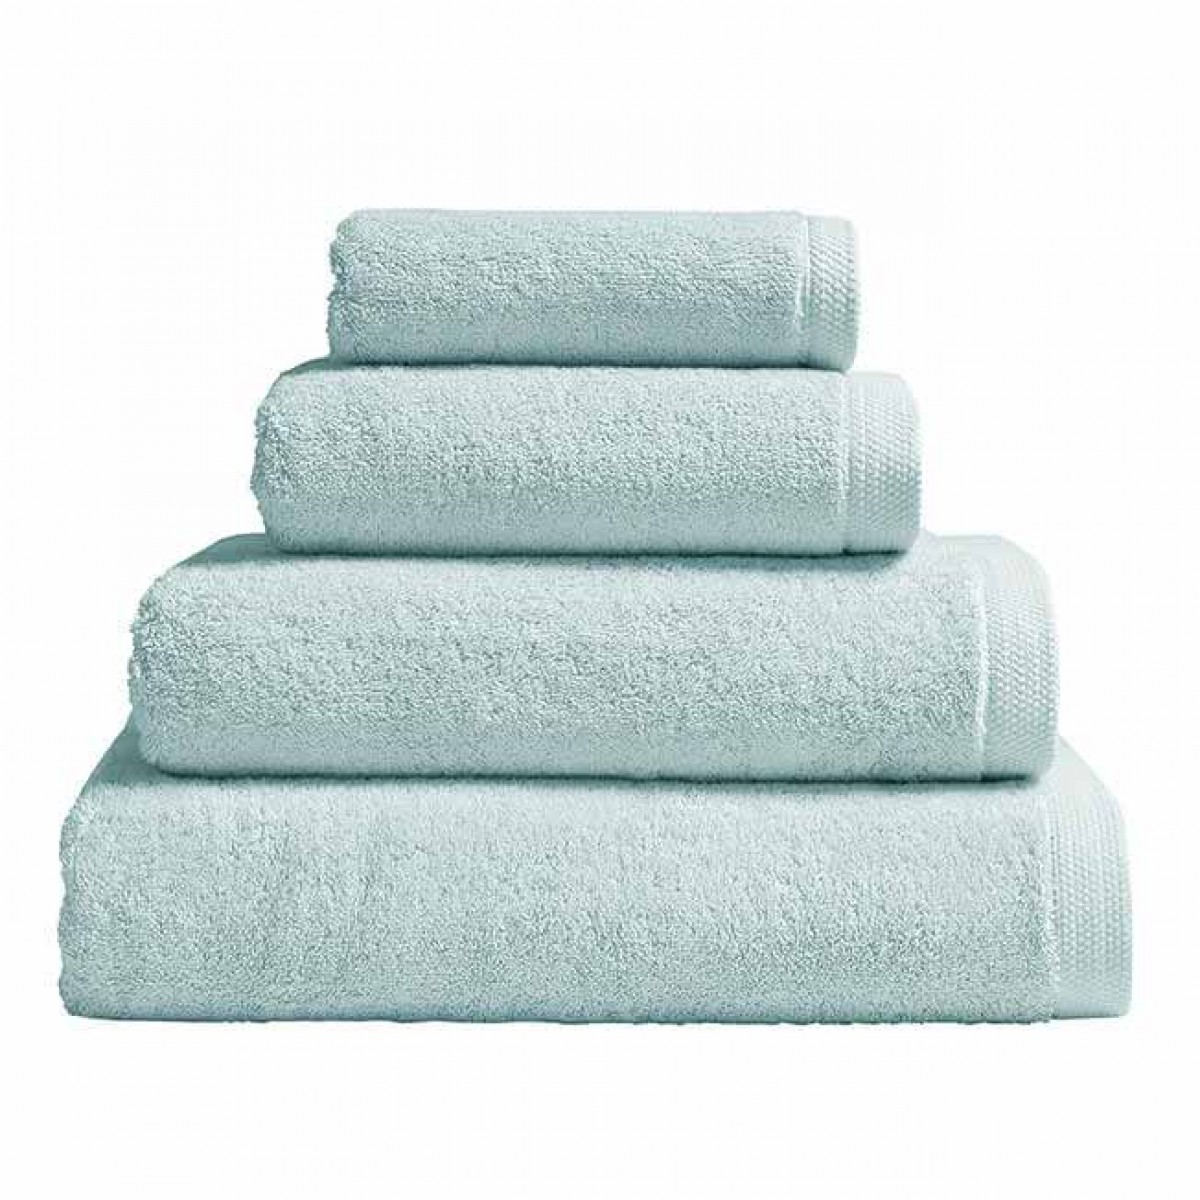 Guest towel, towel, bath towel, bath sheet